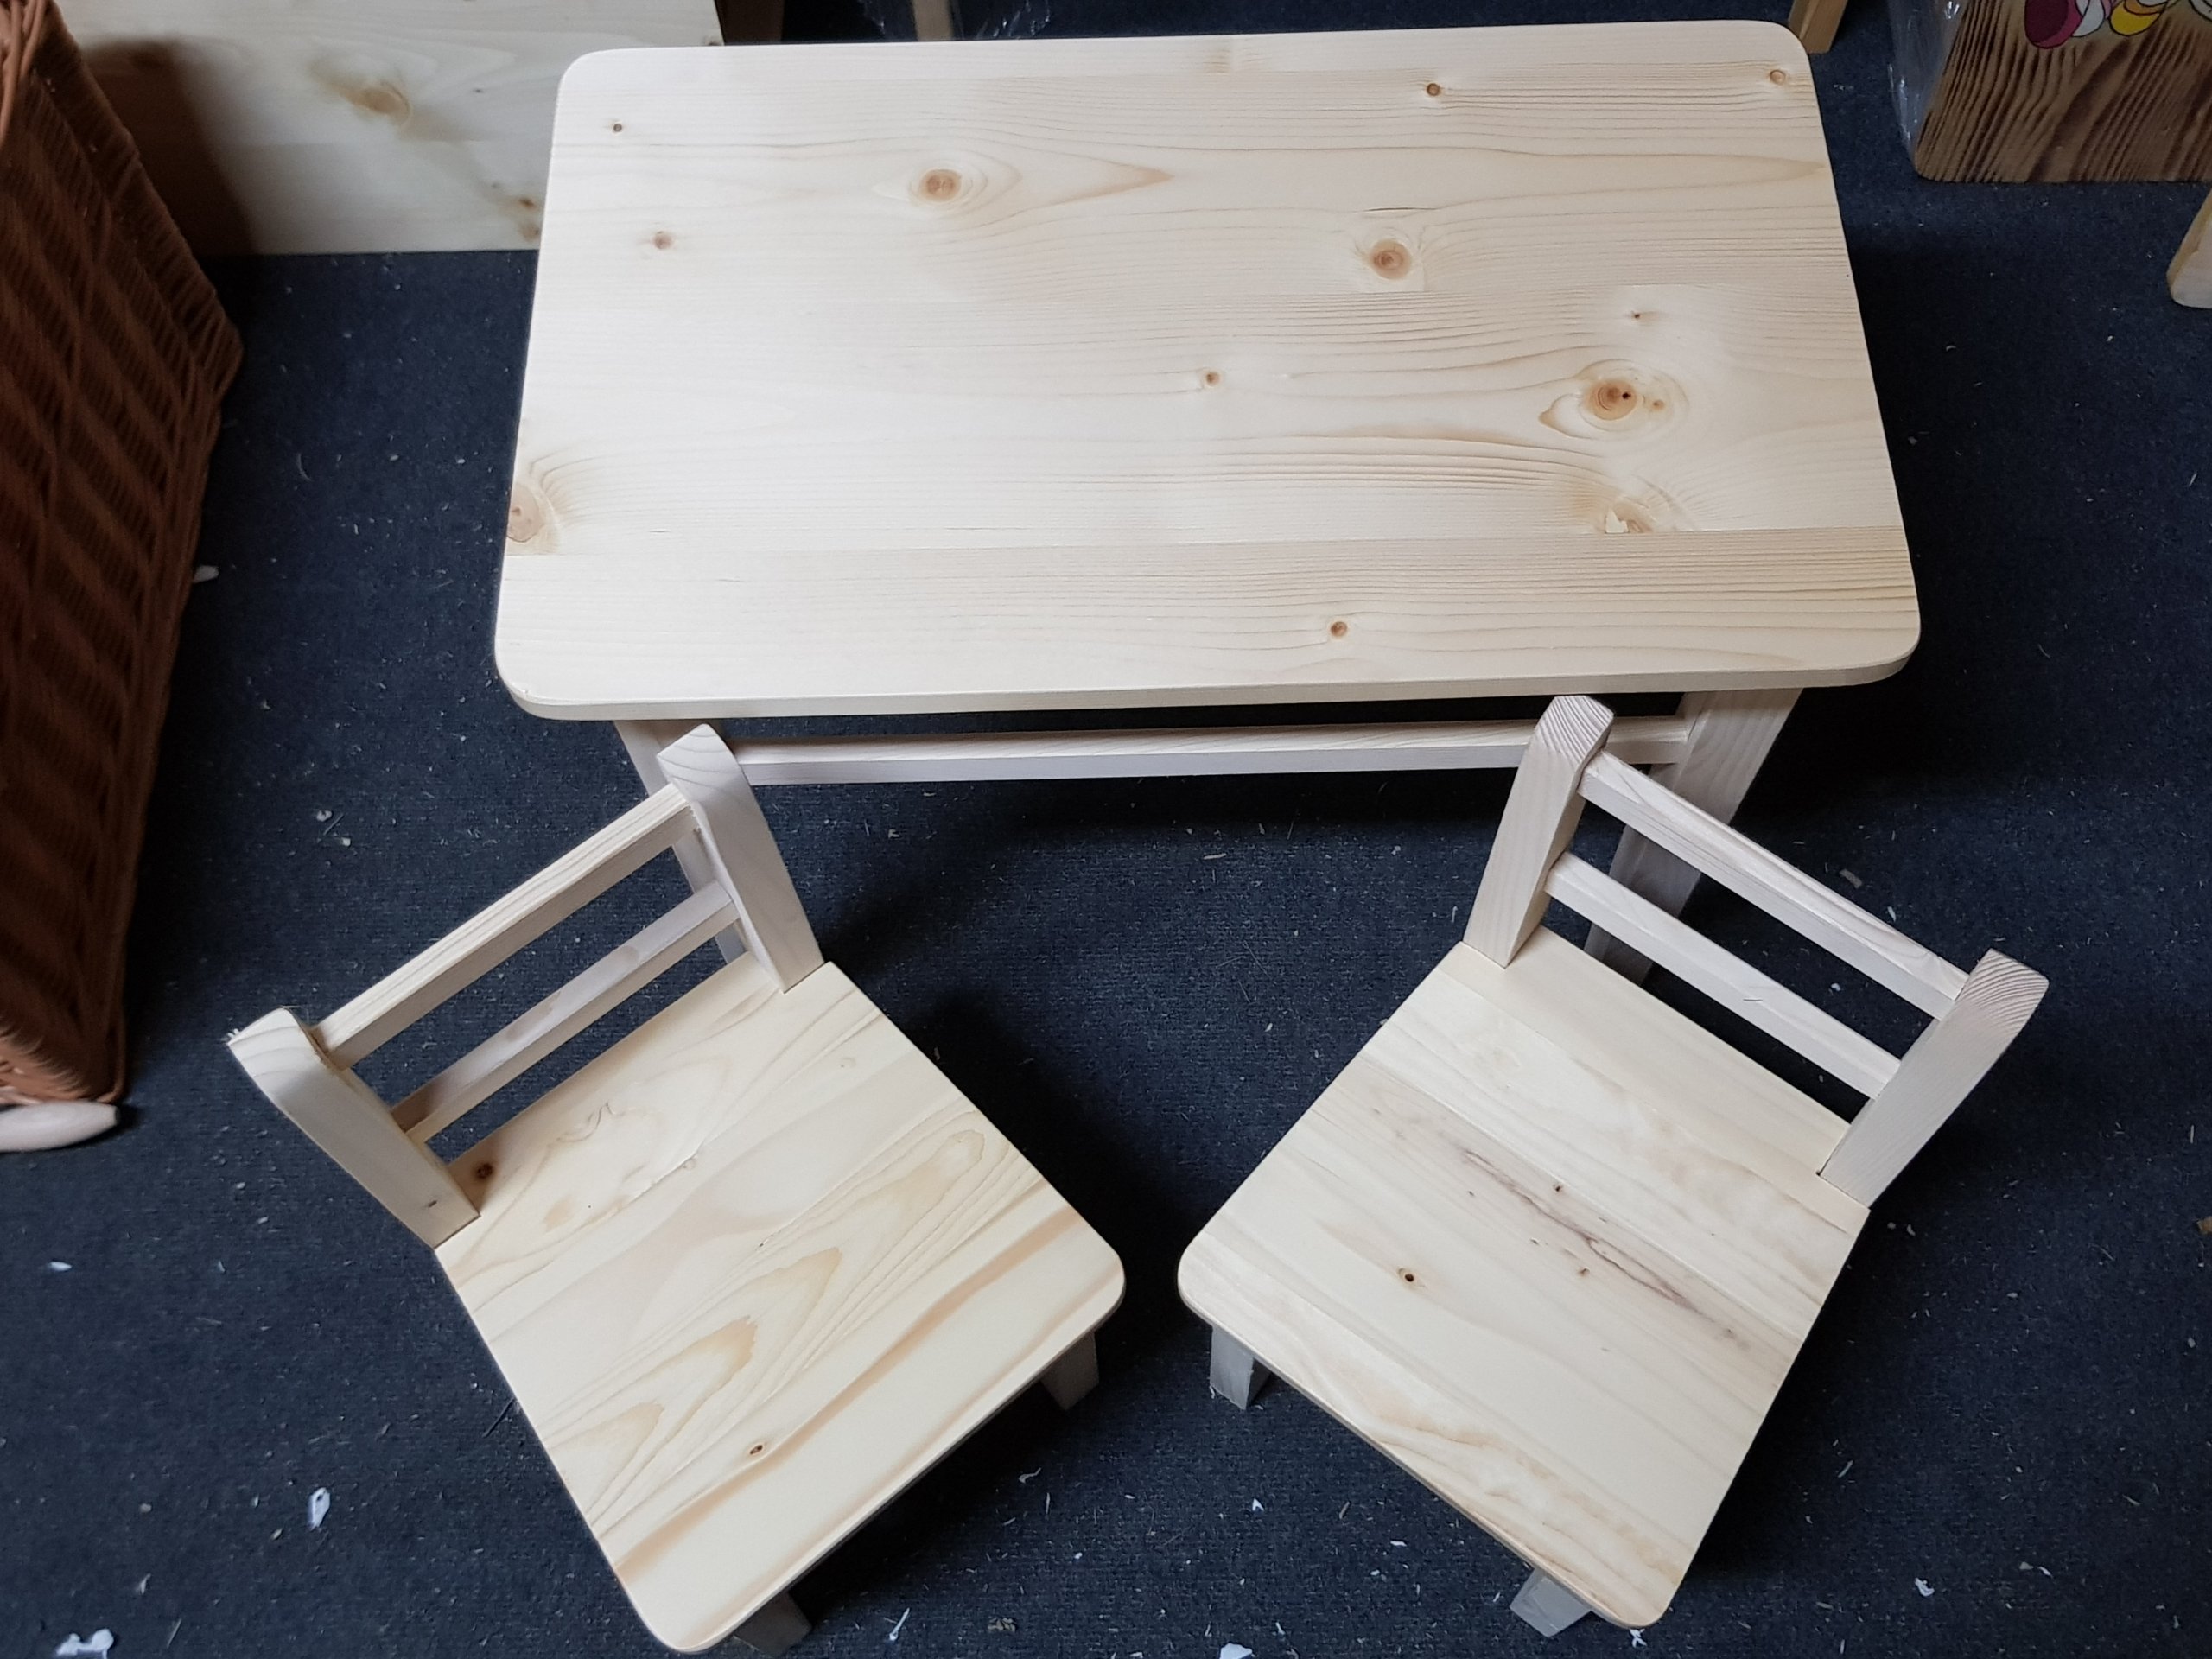  Дерев'яні меблі для дітей стіл + 2 стільчика!! Код виробника korbmax 